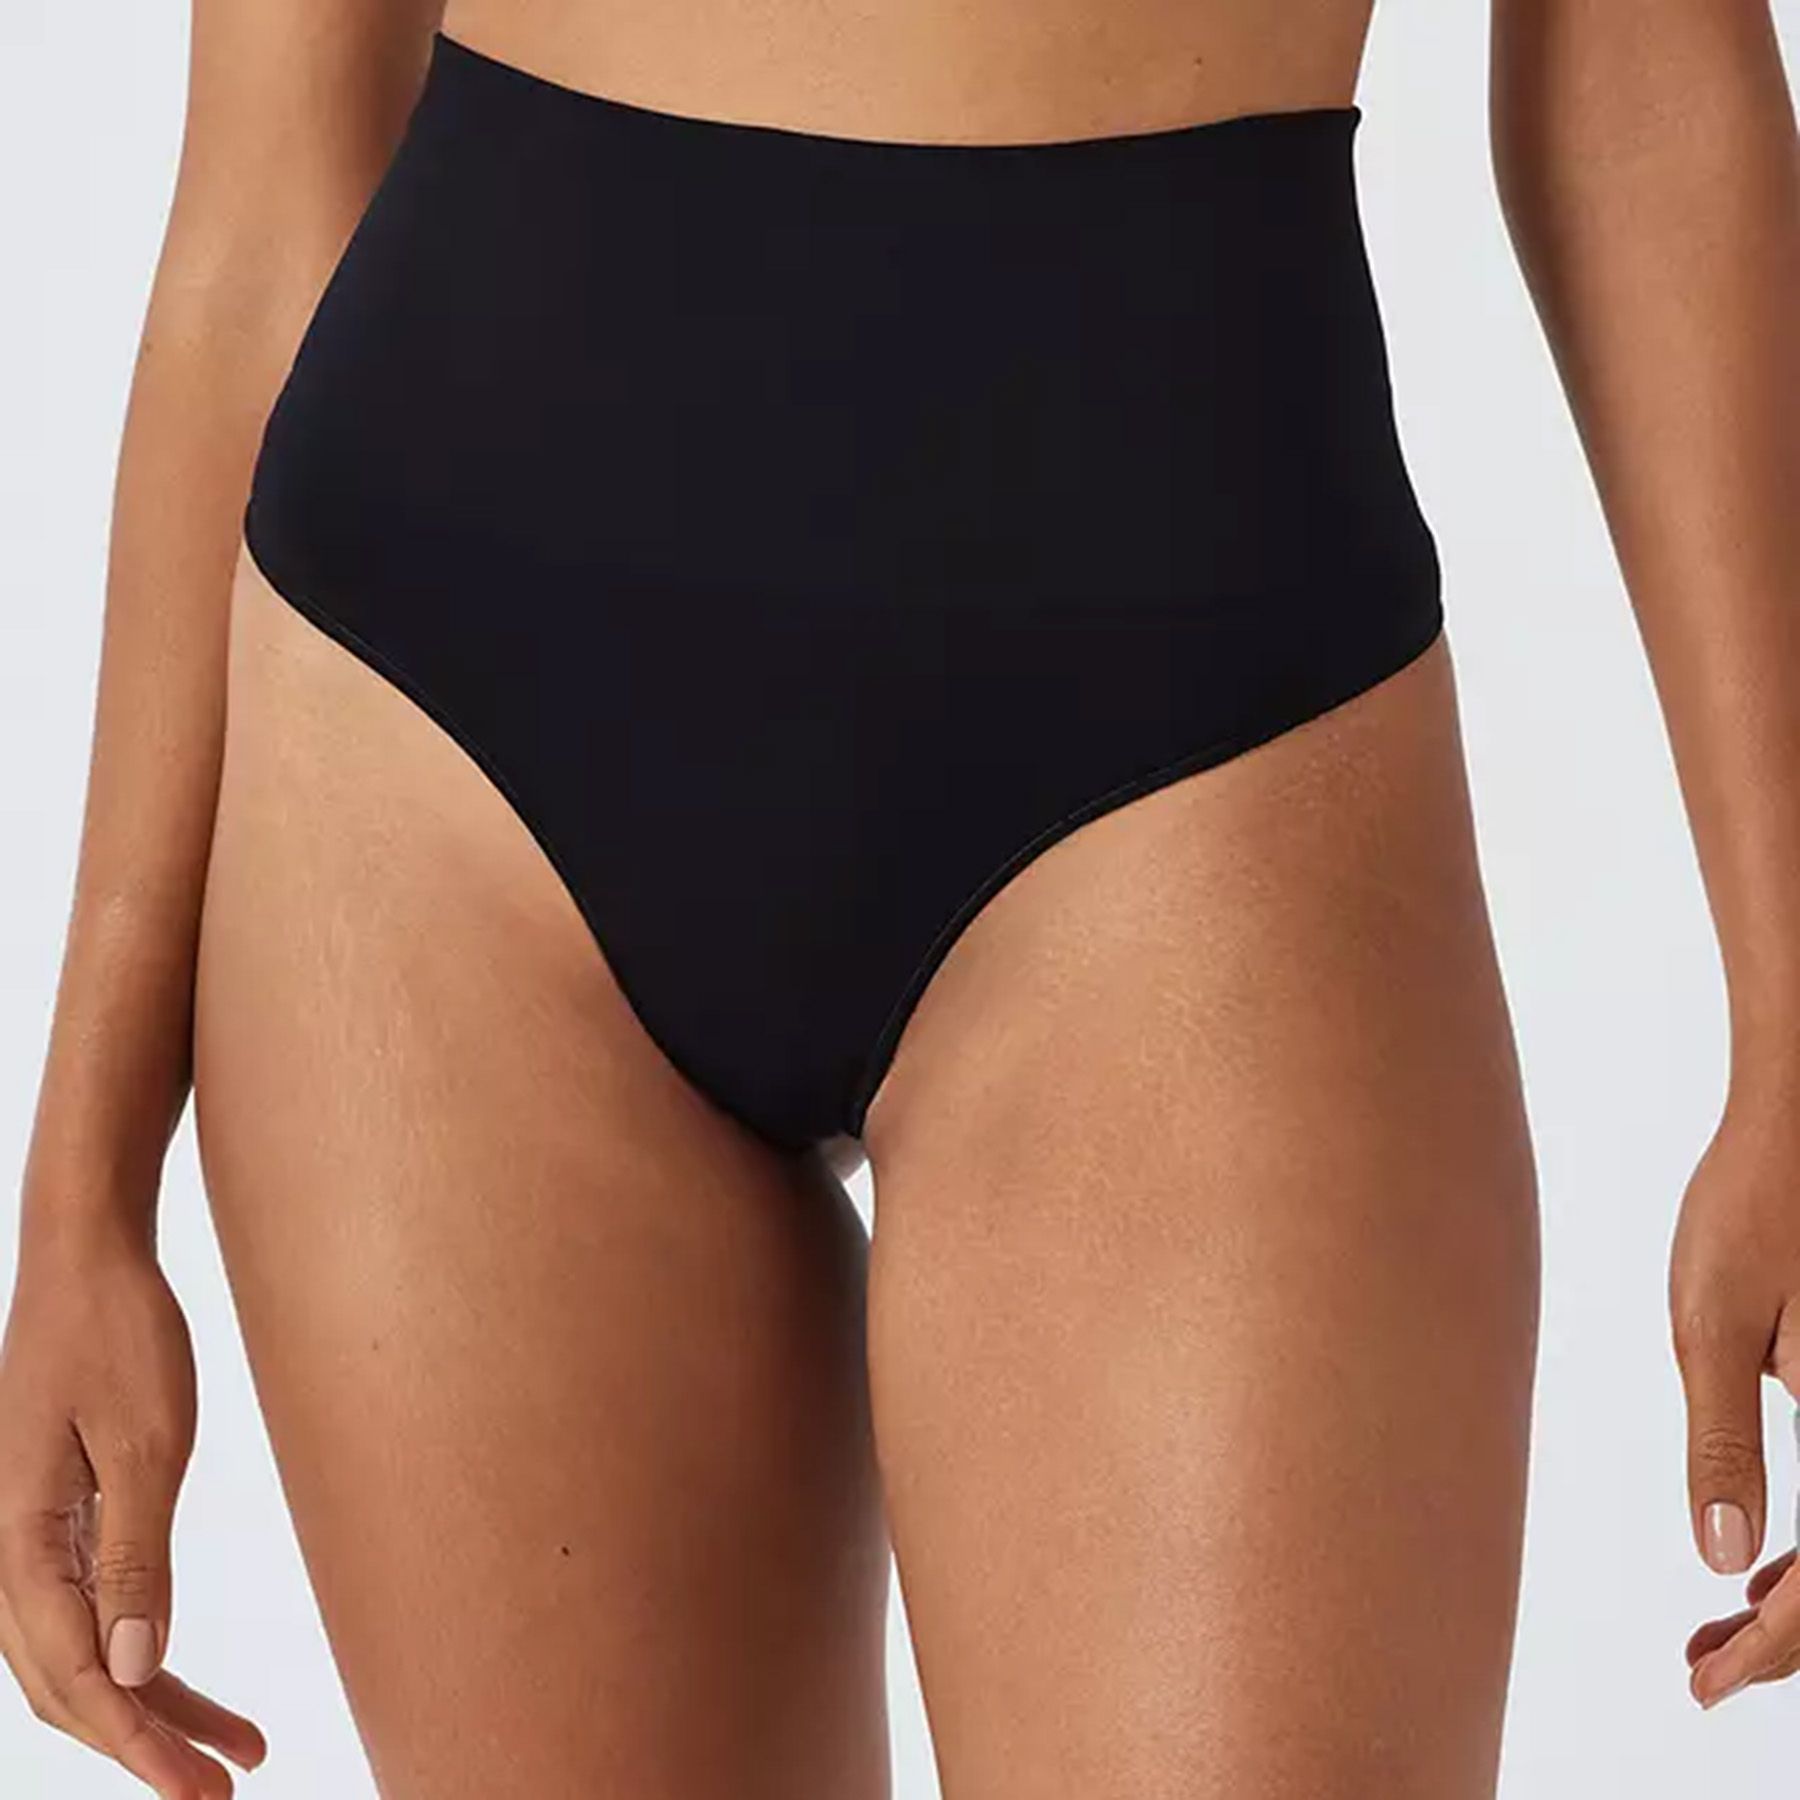 SKIMS Underwear Bodysuits for Women - prices in dubai